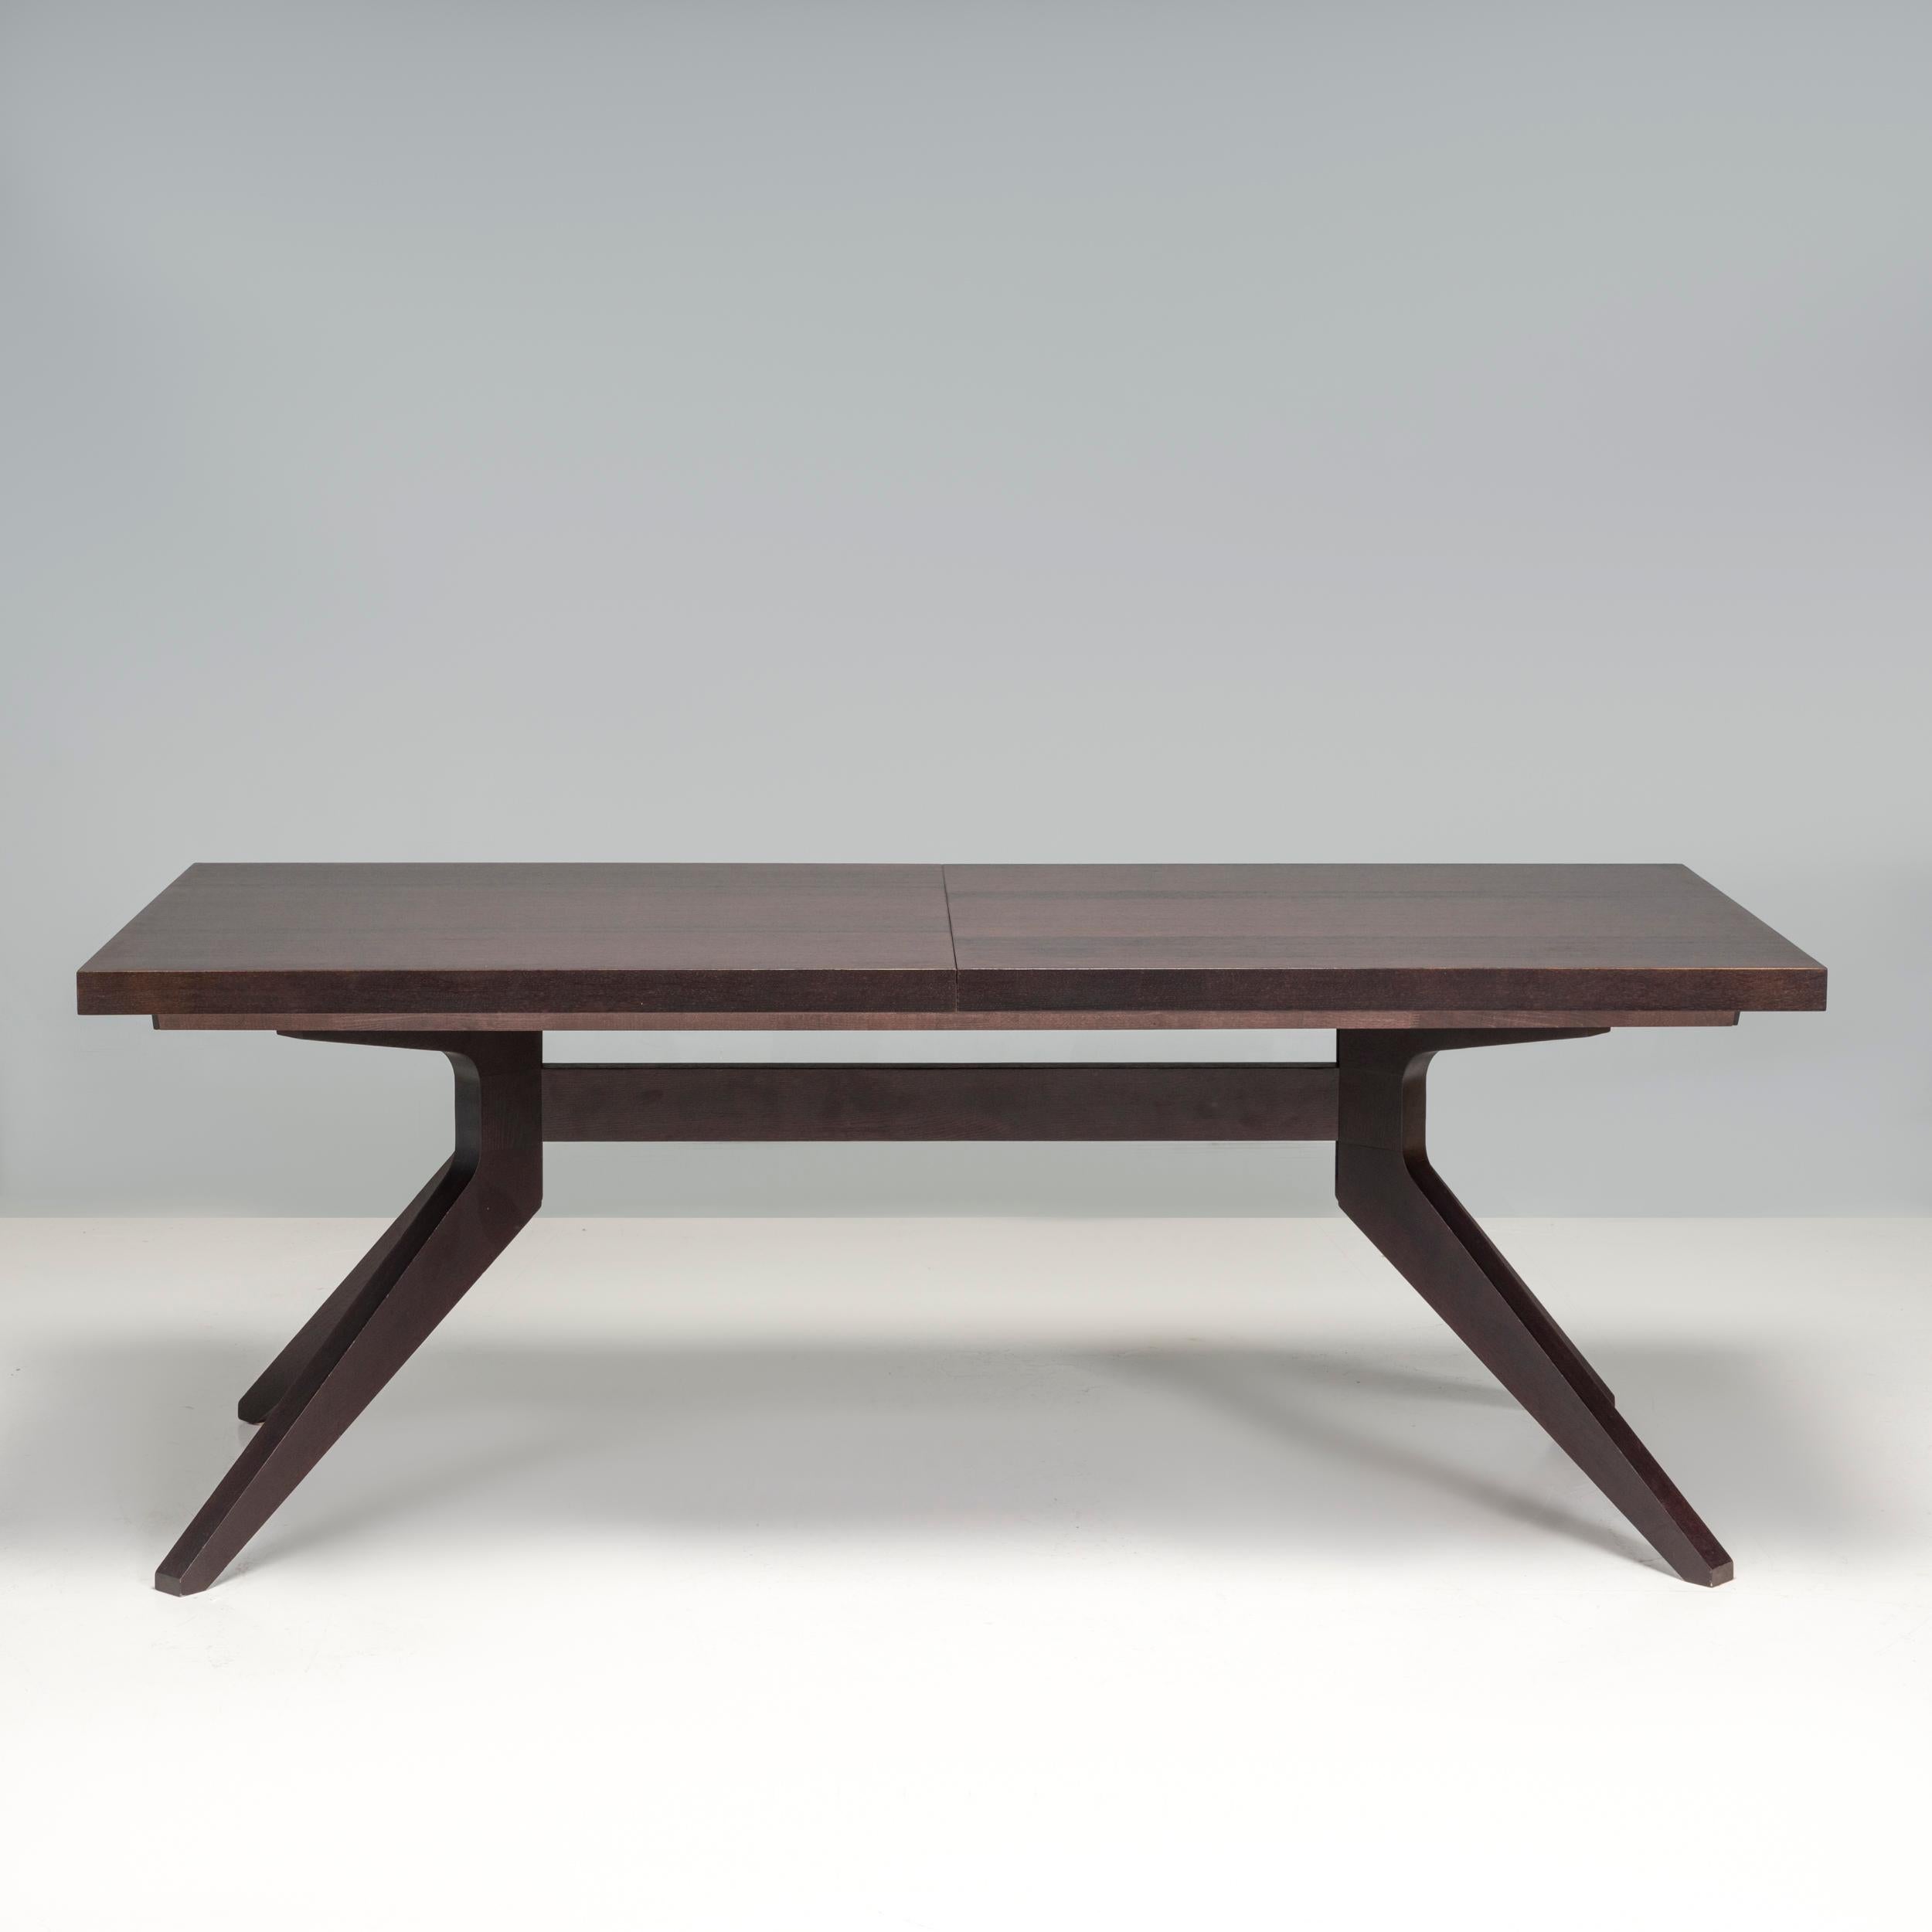 Conçue à l'origine par Matthew Hilton en 2014 et fabriquée par Case furniture depuis, la table à manger Cross est un fantastique exemple de design britannique contemporain, lauréat du prix Designer's Guild.

Fabriquée en Lituanie à partir de chêne